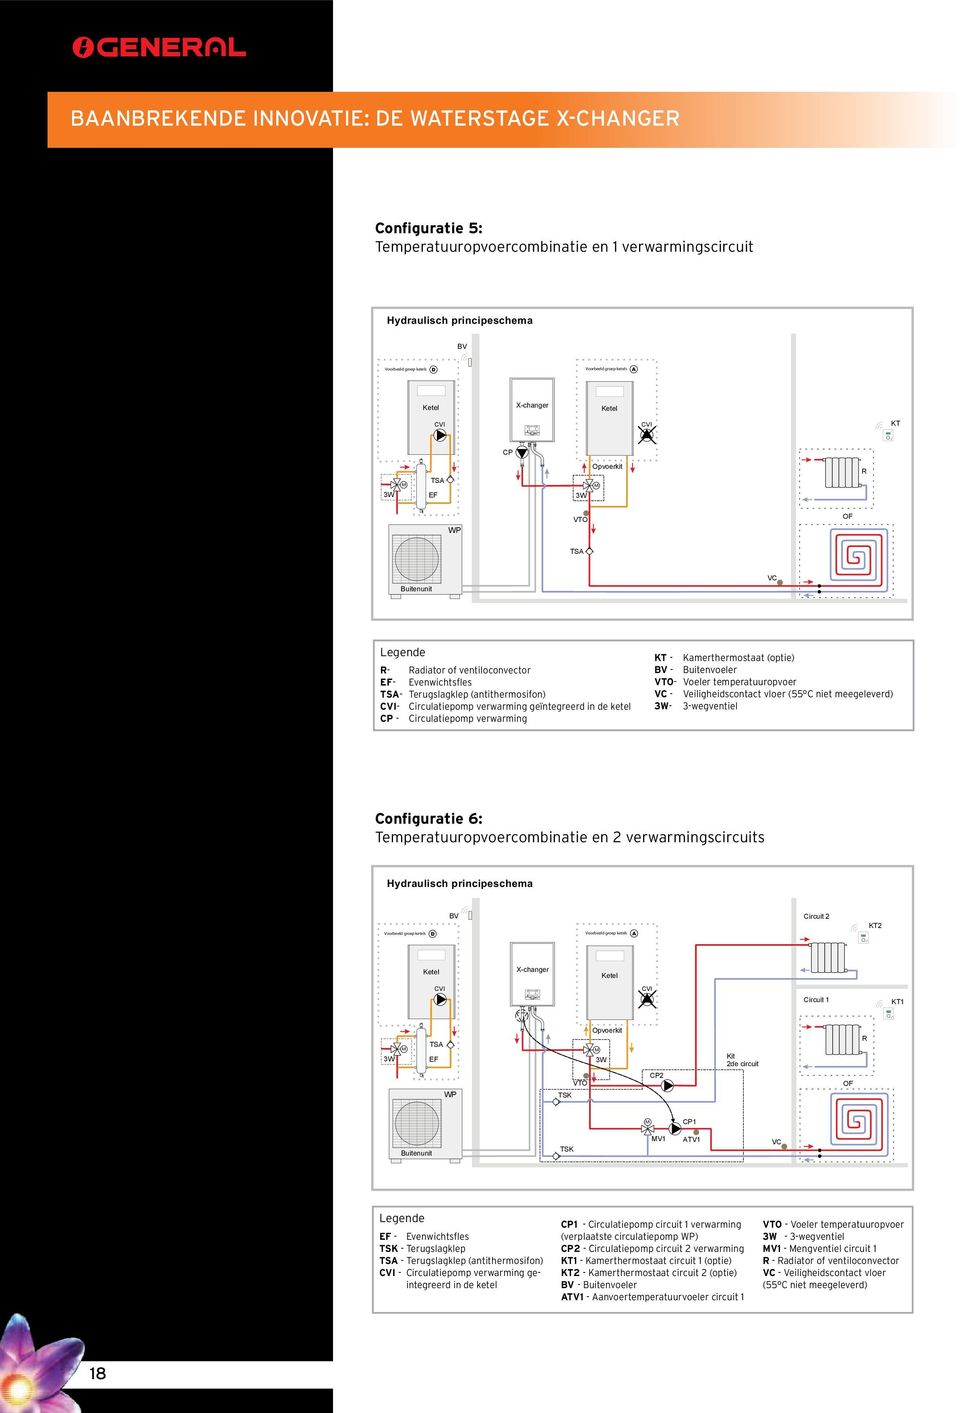 vloer (55 C niet meegeleverd) - 3-wegventiel Configuratie 6: Temperatuuropvoercombinatie en 2 verwarmingscircuits D Circuit 2 KT2 Circuit 1 KT1 TS EF Opvoerkit VTO CP2 Kit 2de circuit CP1 V1 TV1 EF -